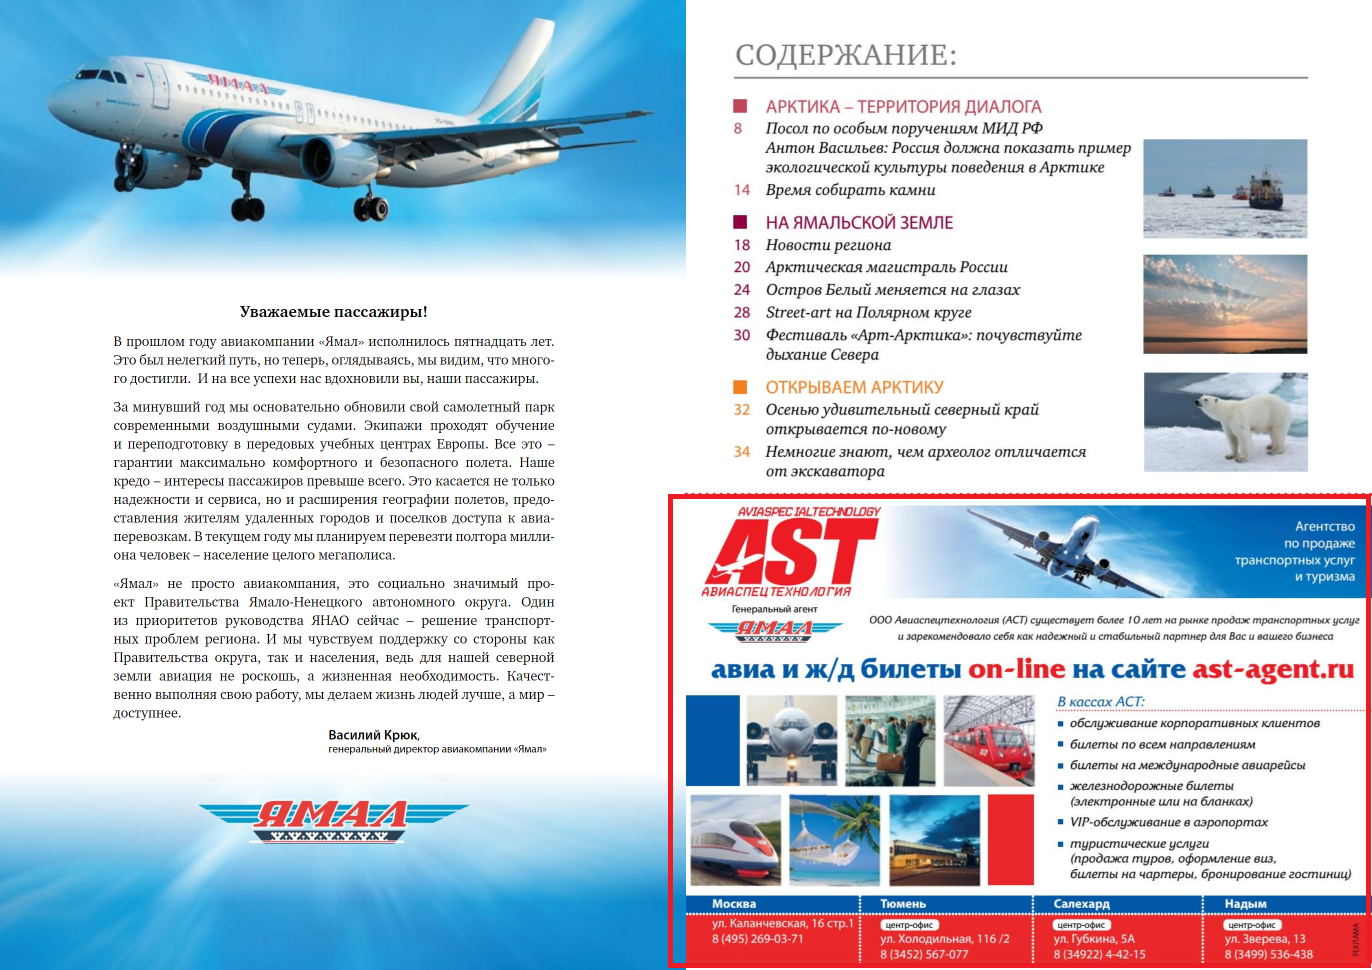 Скриншот из бортового журнала региональной авиакомпании “Ямал”, 2013 год